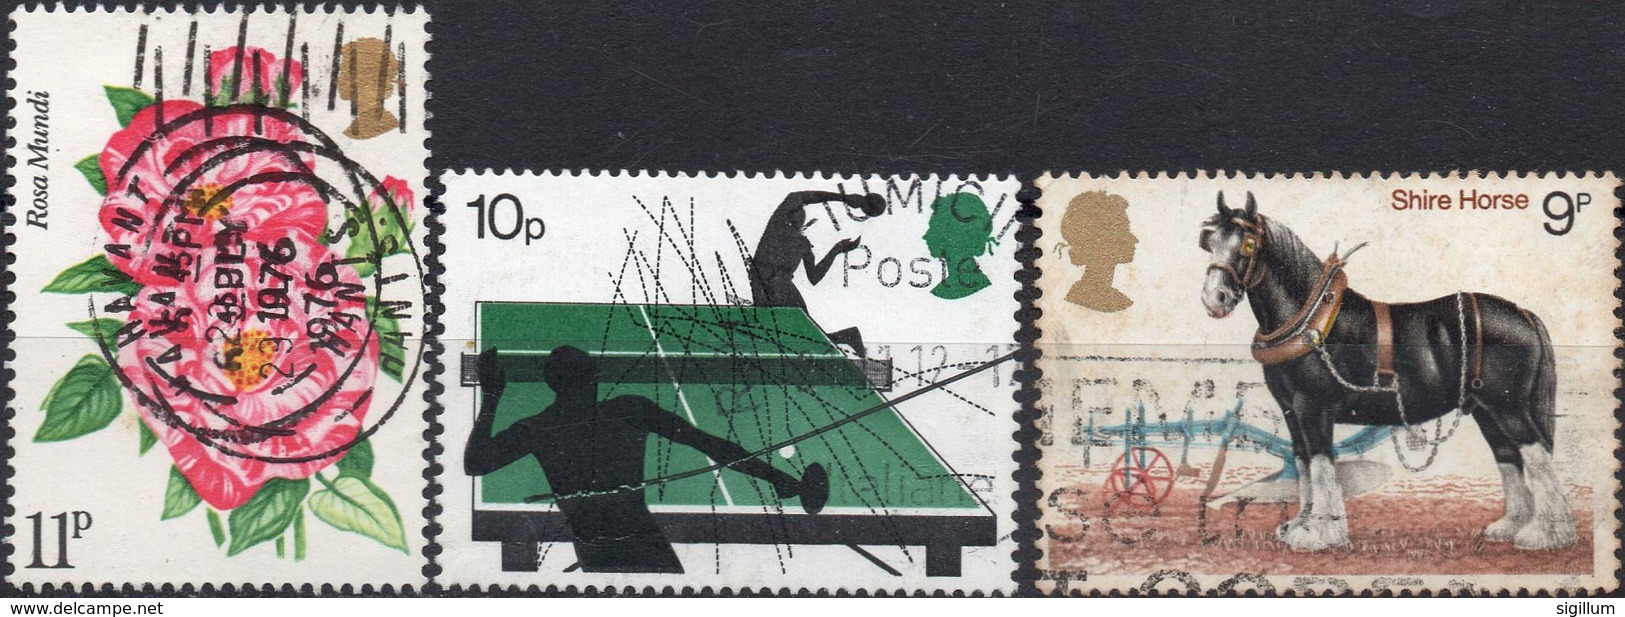 GRAN BRETAGNA 1976/1978 - ROSE + SPORT + CAVALLI - 3 VALORI USATI - Used Stamps